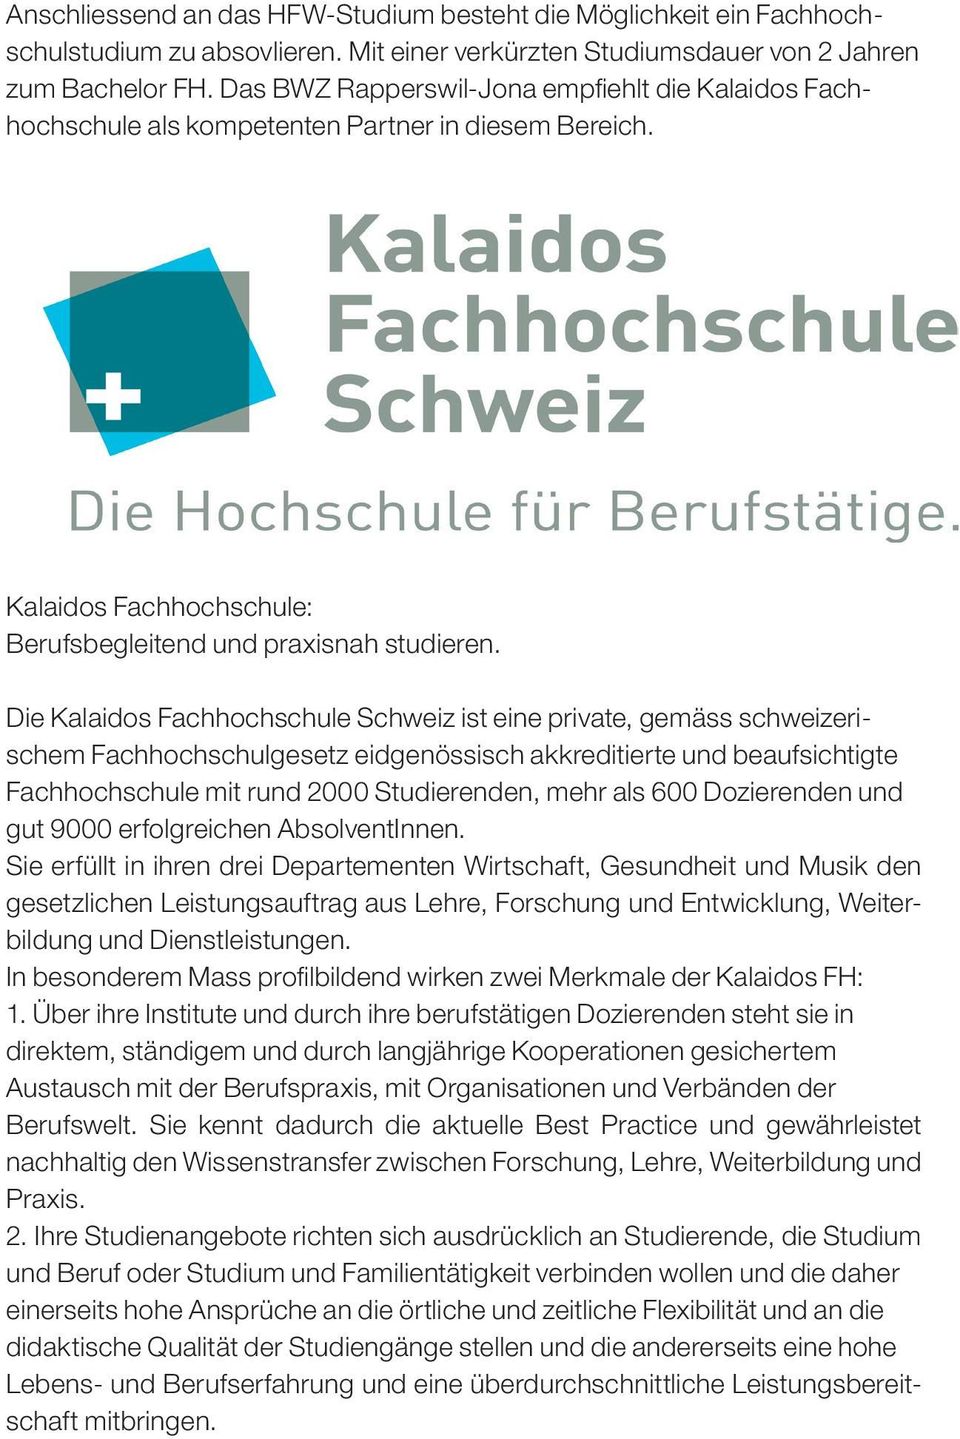 Die Kalaidos Fachhochschule Schweiz ist eine private, gemäss schweizerischem Fachhochschulgesetz eidgenössisch akkreditierte und beaufsichtigte Fachhochschule mit rund 2000 Studierenden, mehr als 600